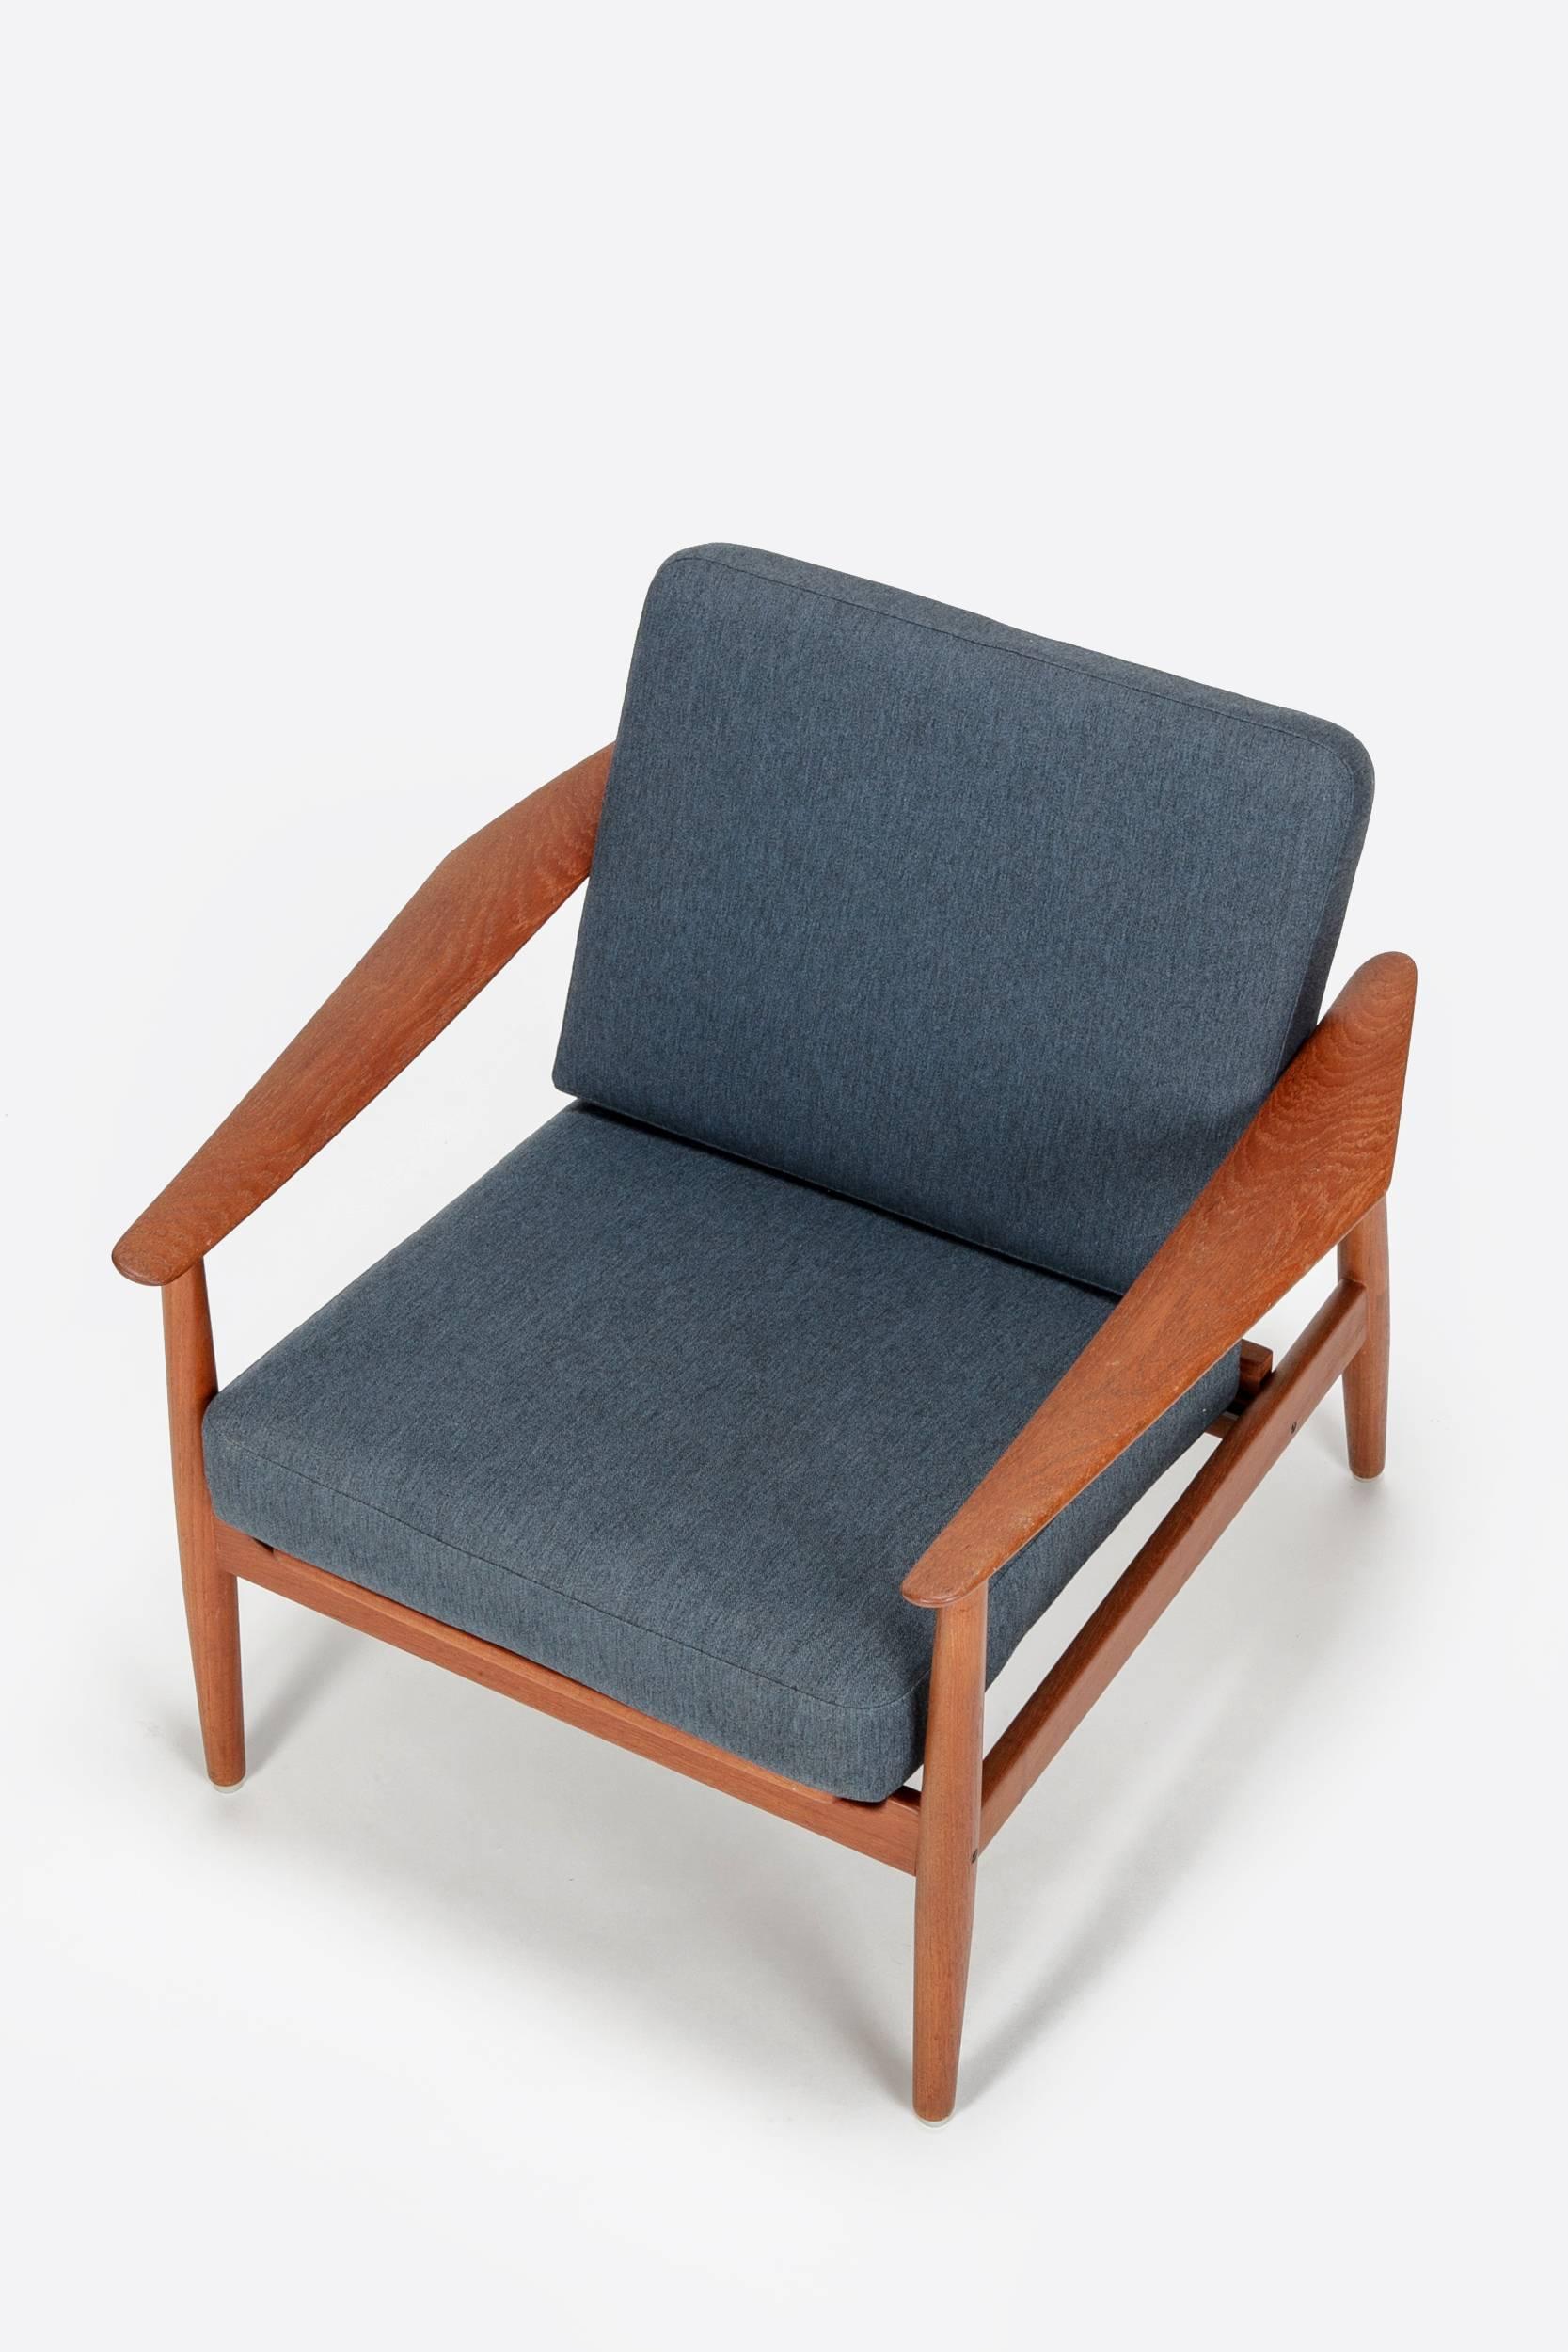 Danish All Original Arne Vodder Lounge Chair Model 164 France & Son